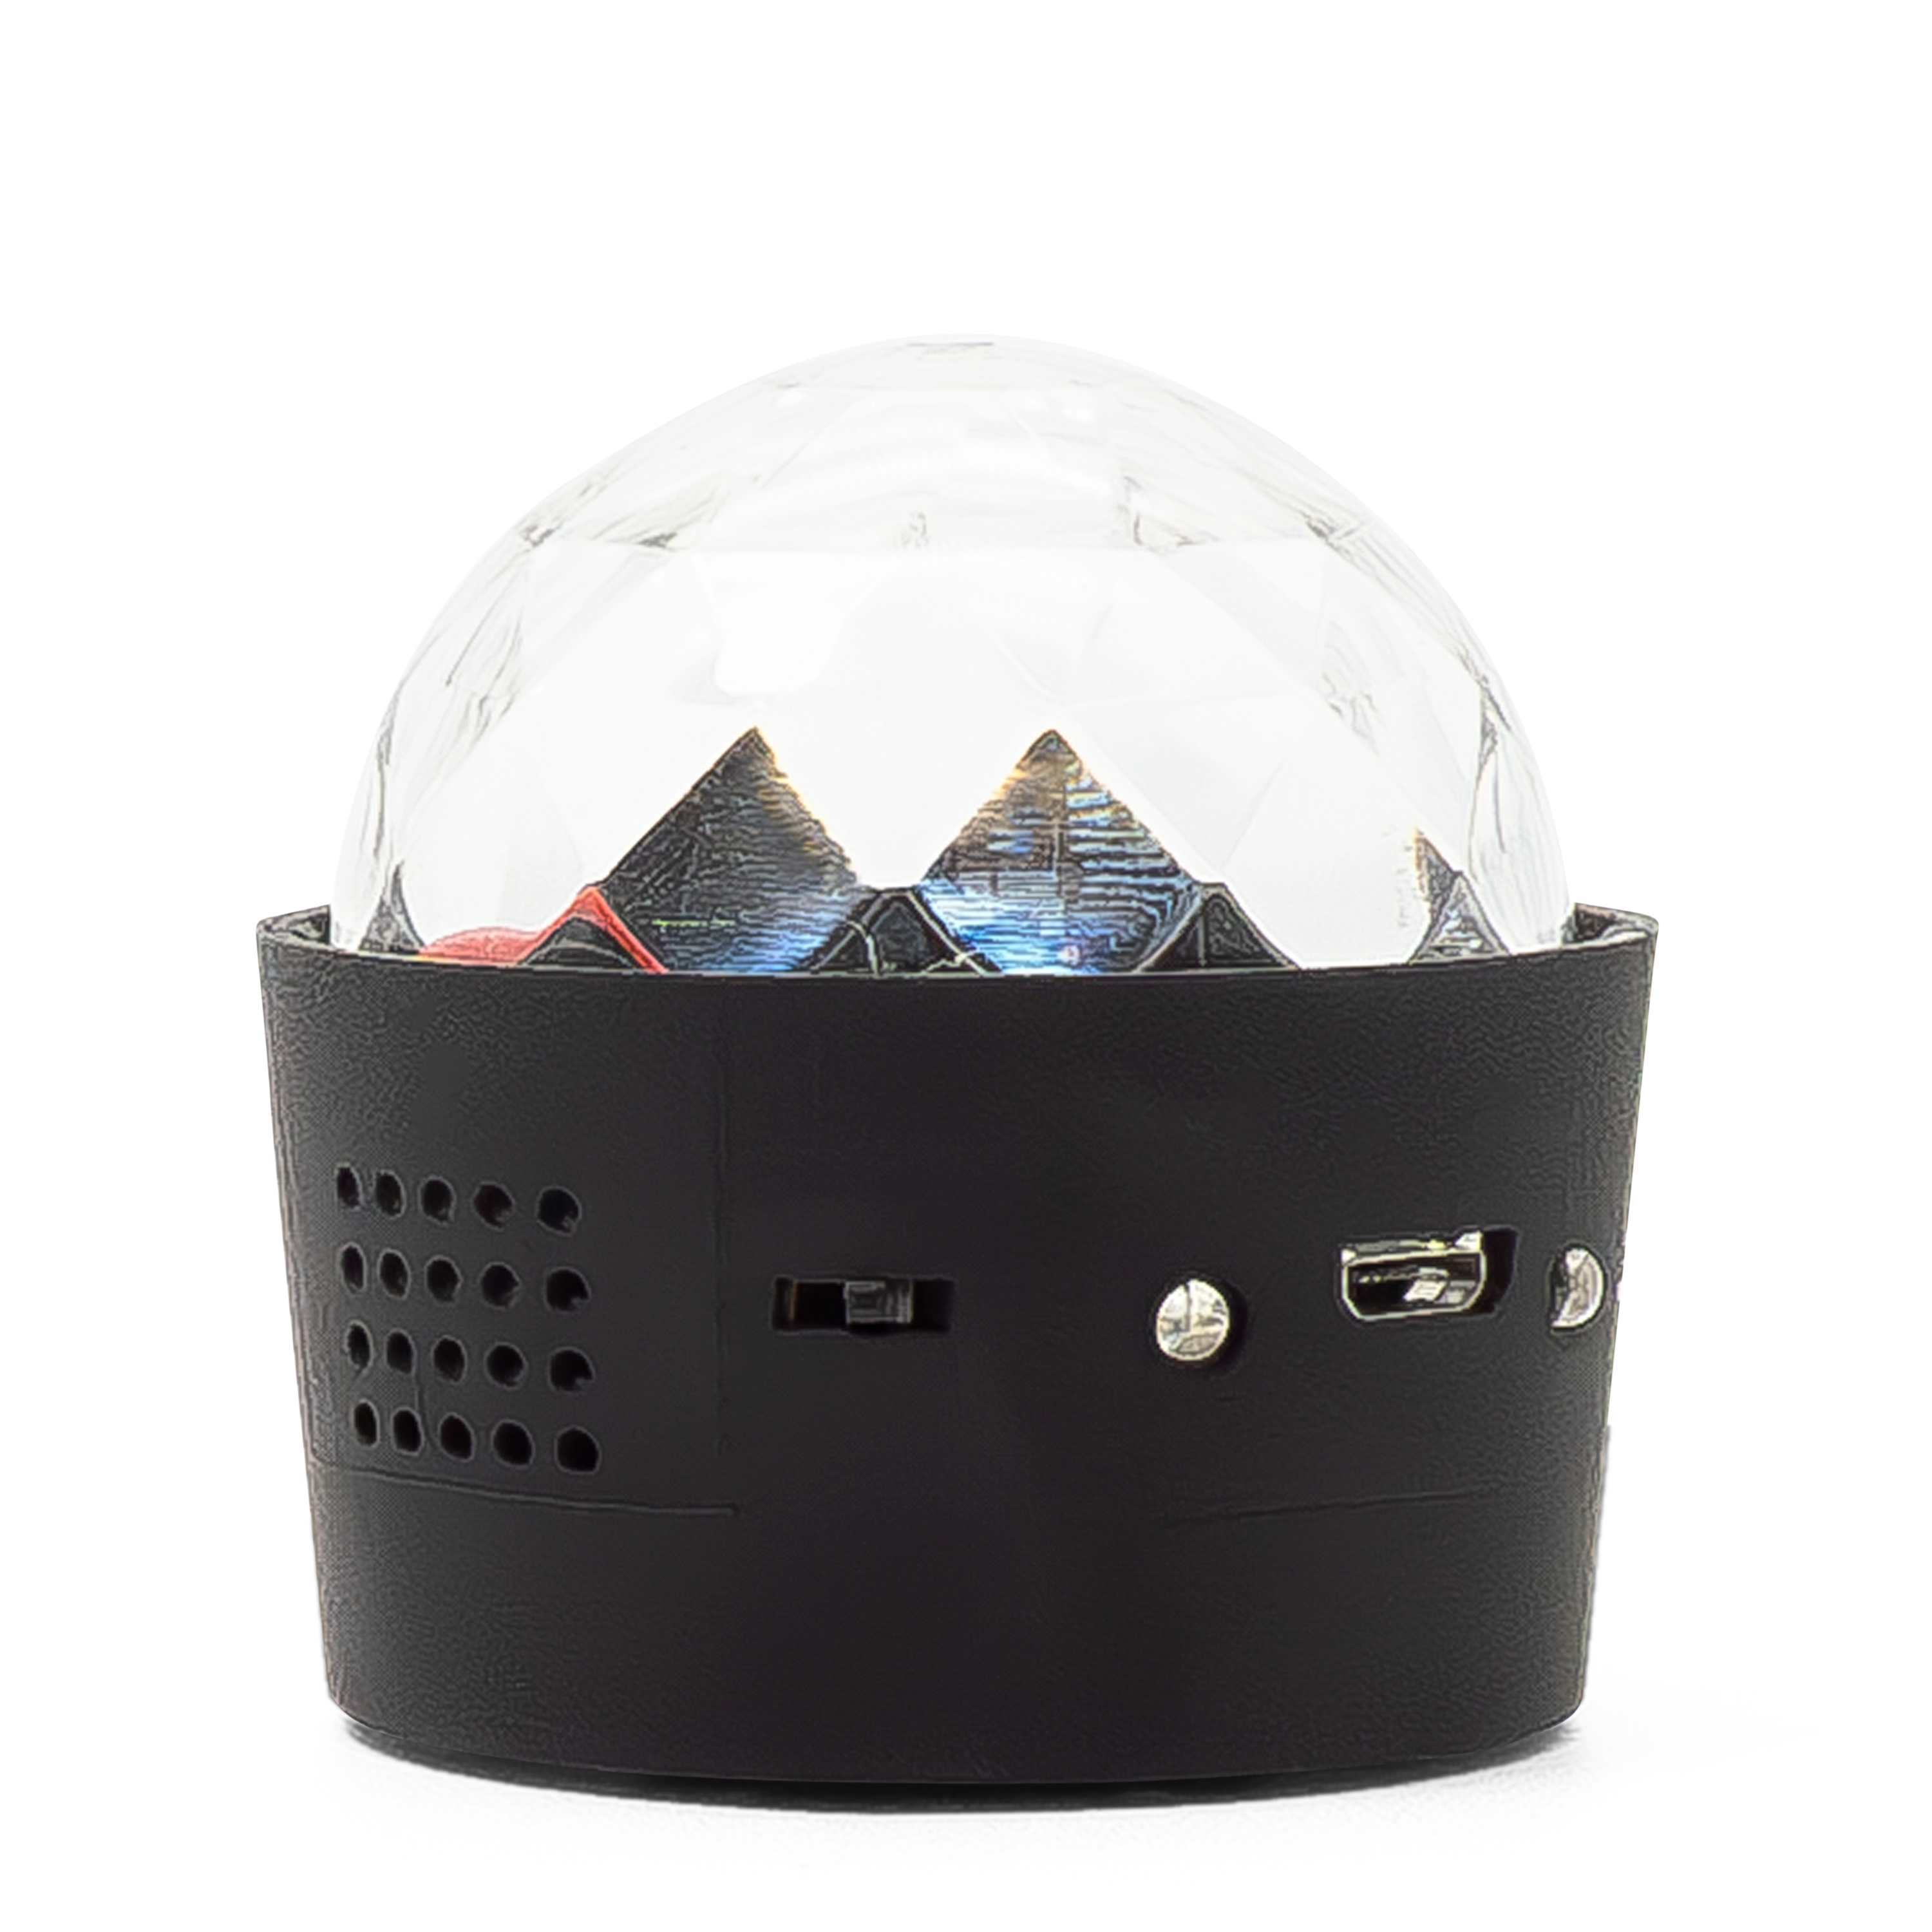 Ø5cm) Soundgesteuerte Mini LED Discokugel Partylicht